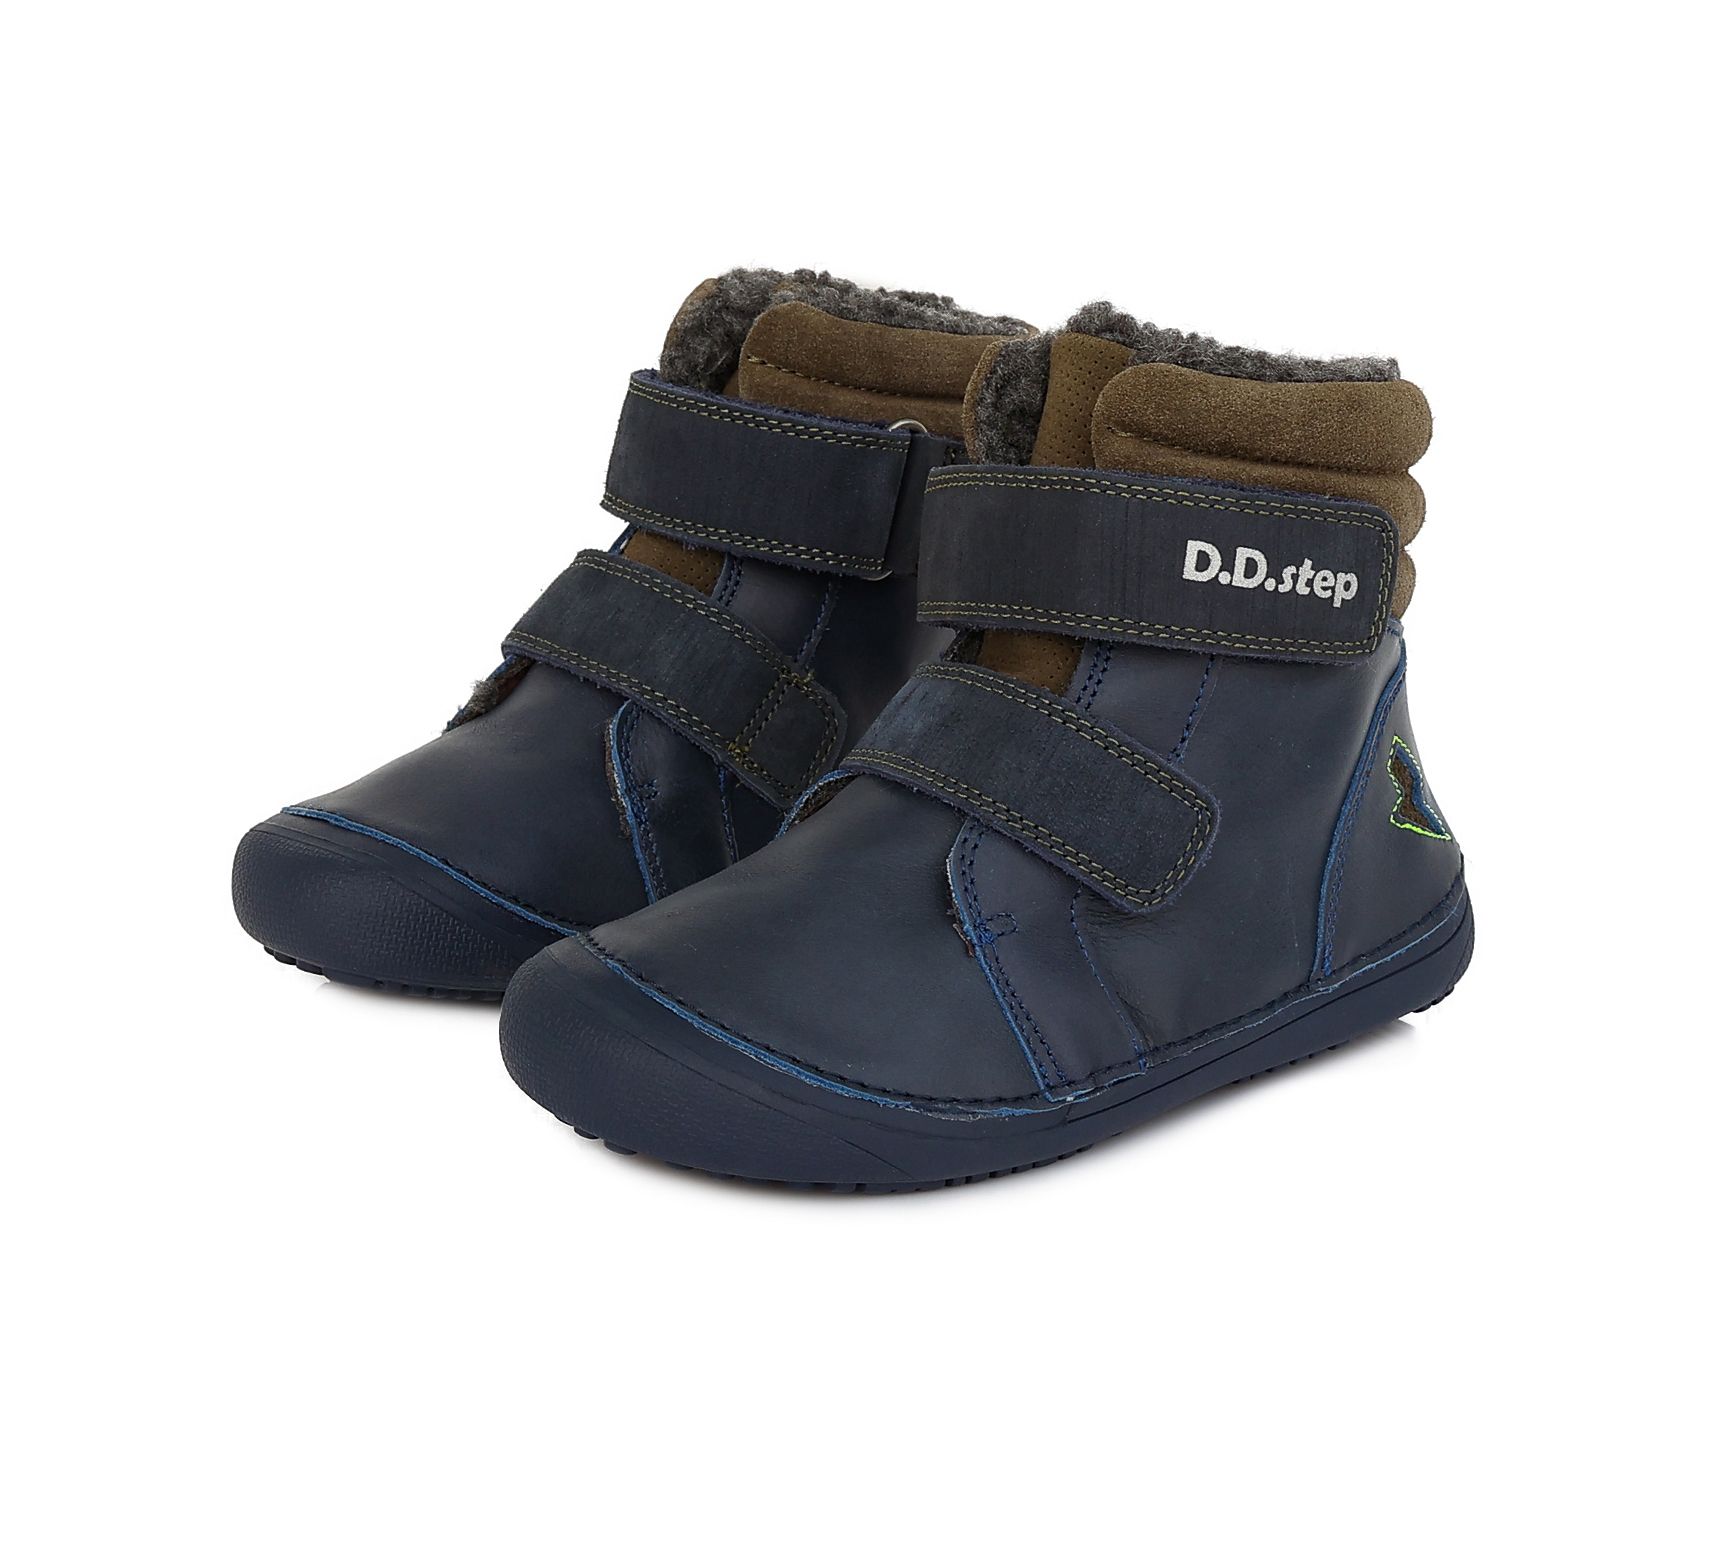 D.D.Step villavoodriga barefoot talvesaapad, Dark Grey D.D.Step - HellyK - Kvaliteetsed lasteriided, villariided, barefoot jalatsid